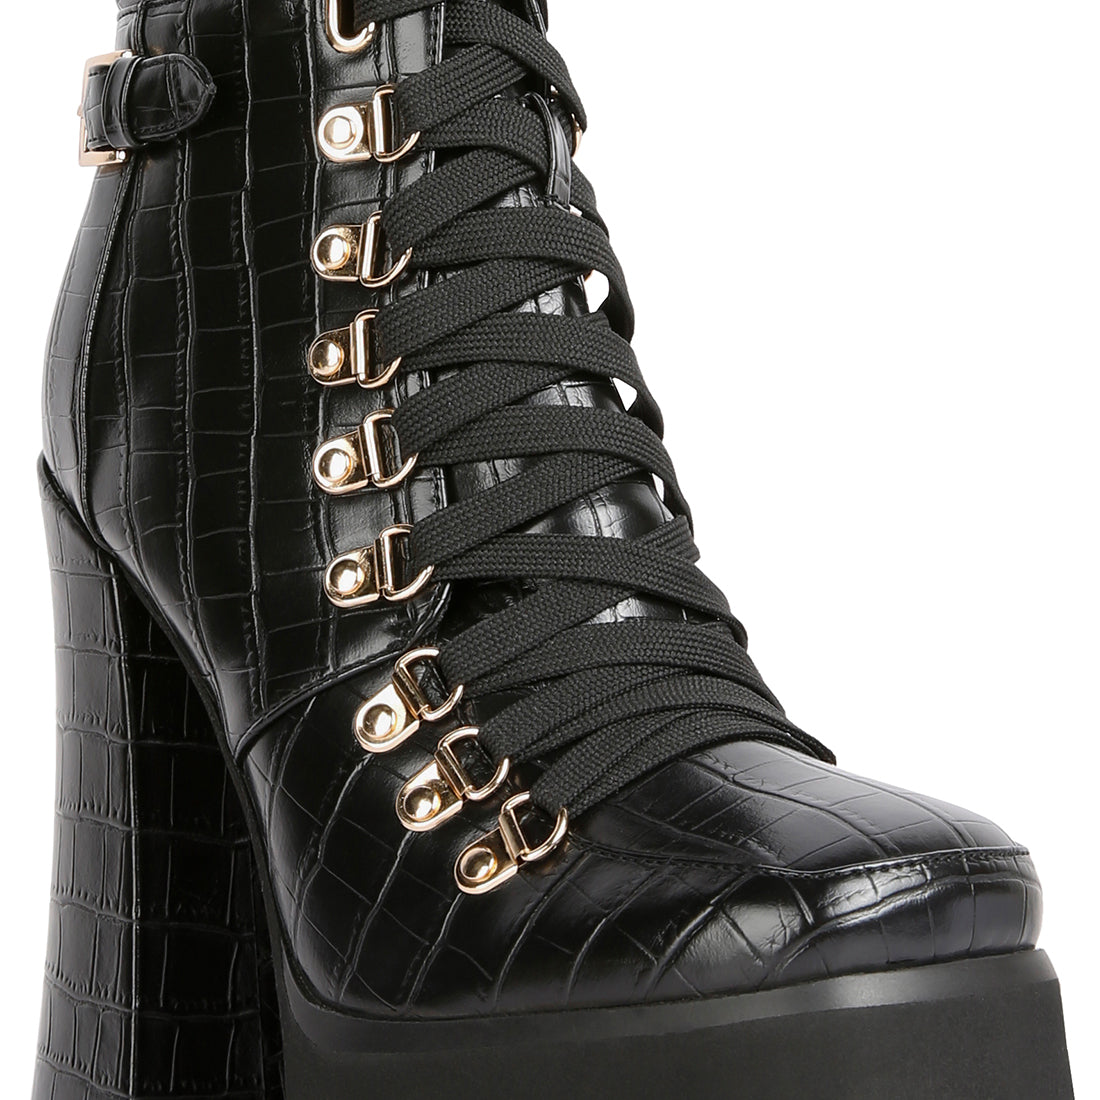 Black High Heeled Platform Ankle Boots